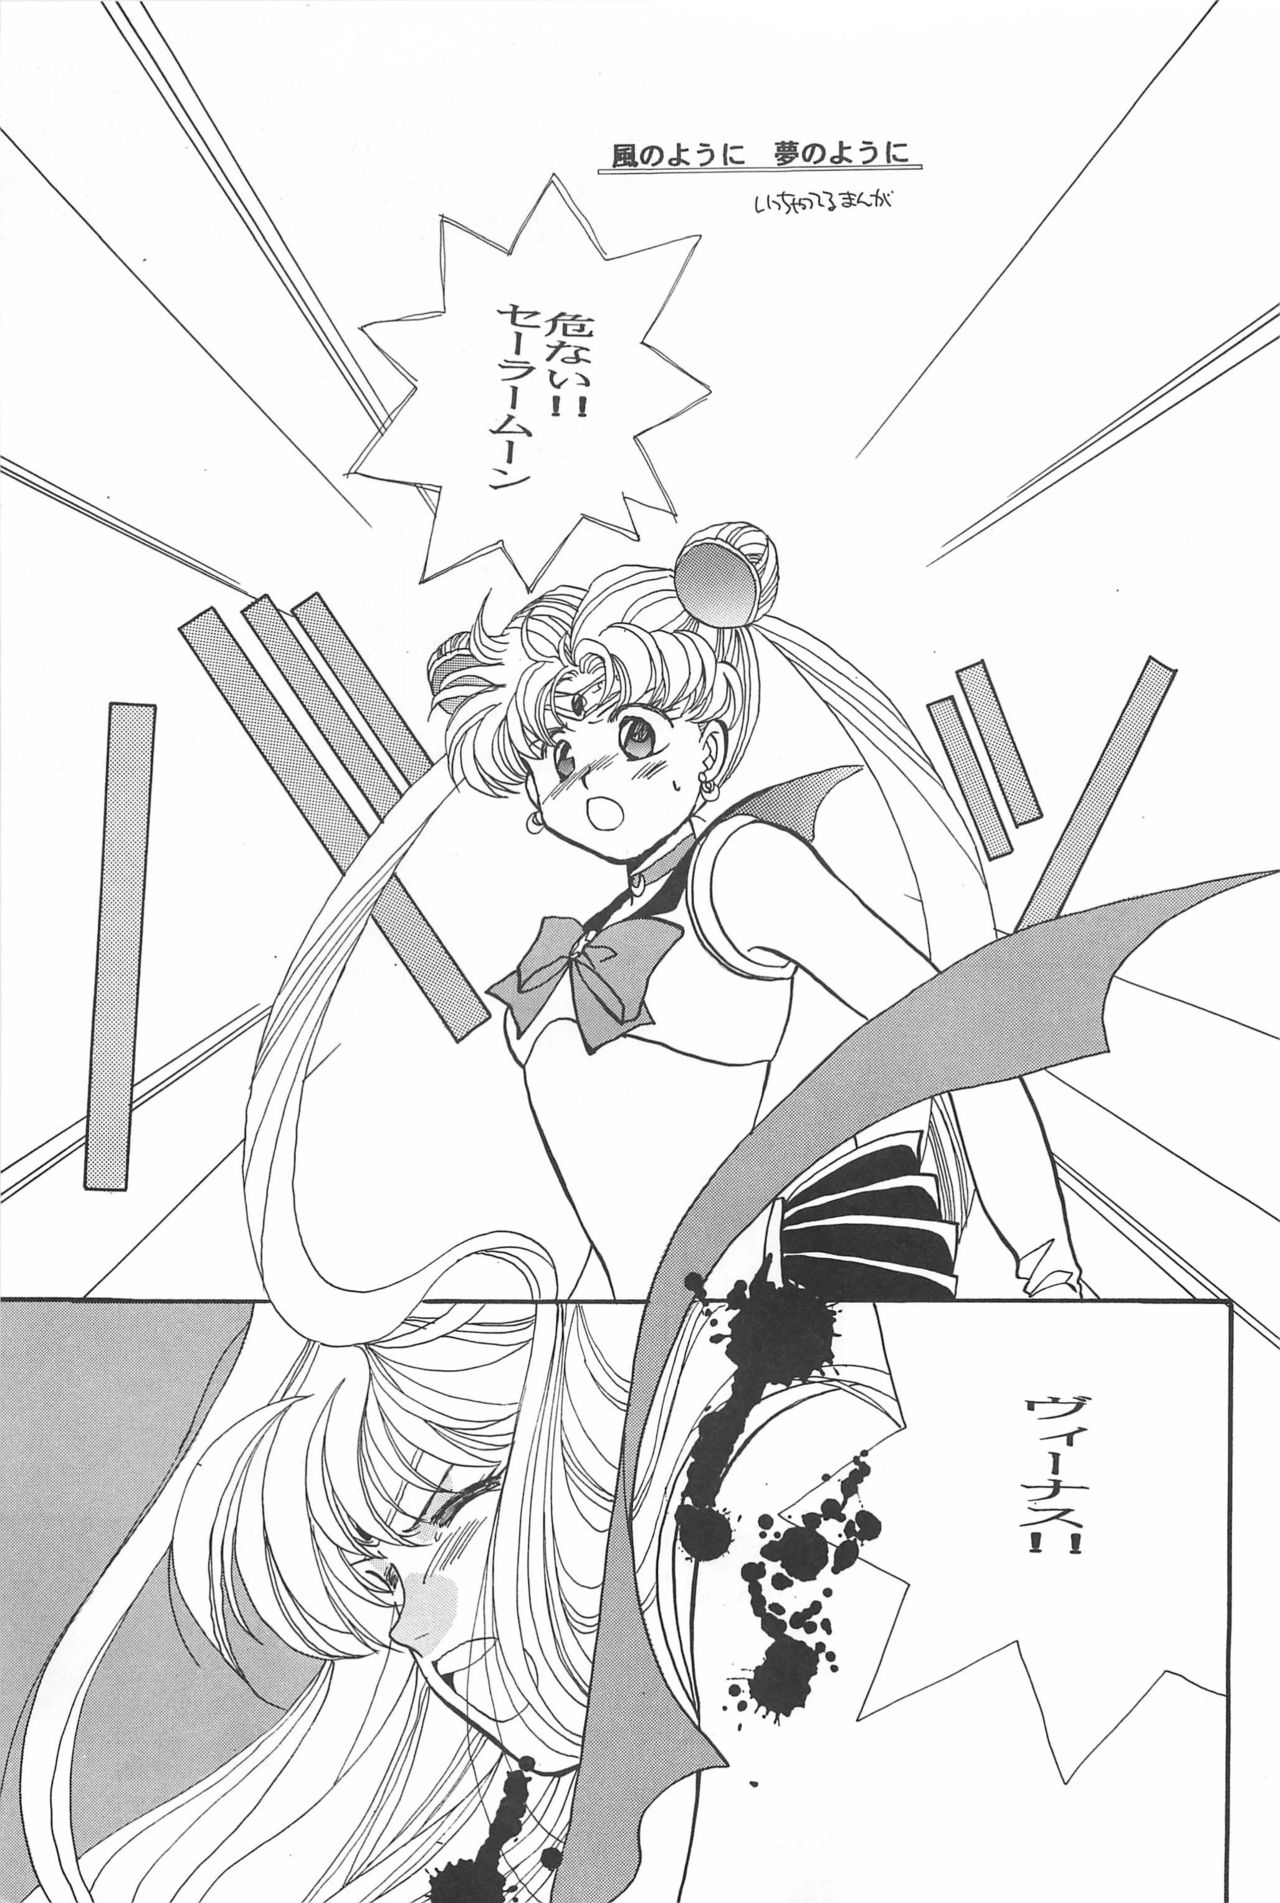 [Hello World (Muttri Moony)] Kaze no You ni Yume no You ni - Sailor Moon Collection (Sailor Moon) 136